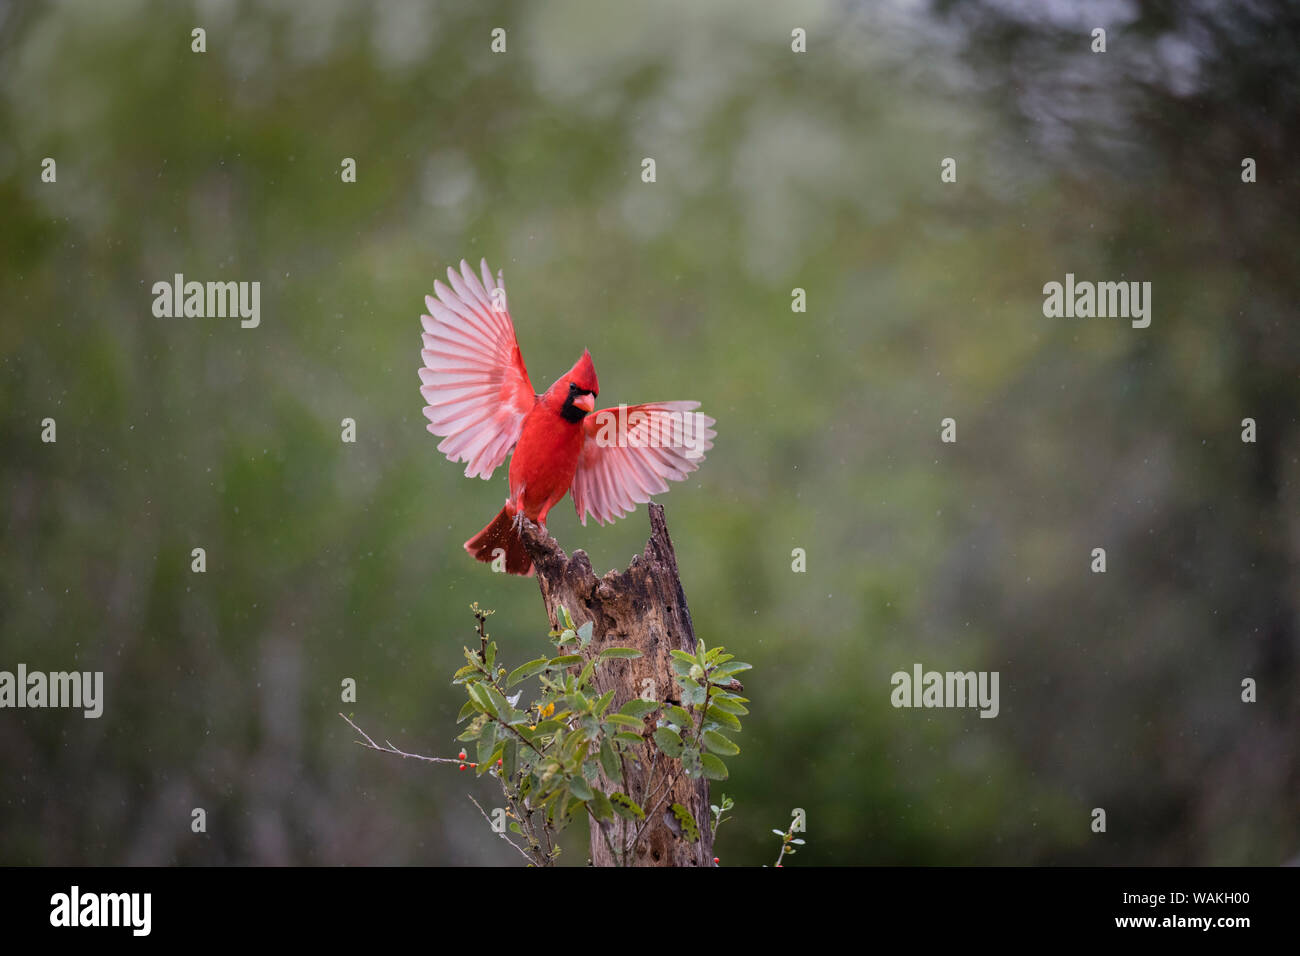 Northern cardinal (Cardinalis cardinalis) landing. Stock Photo